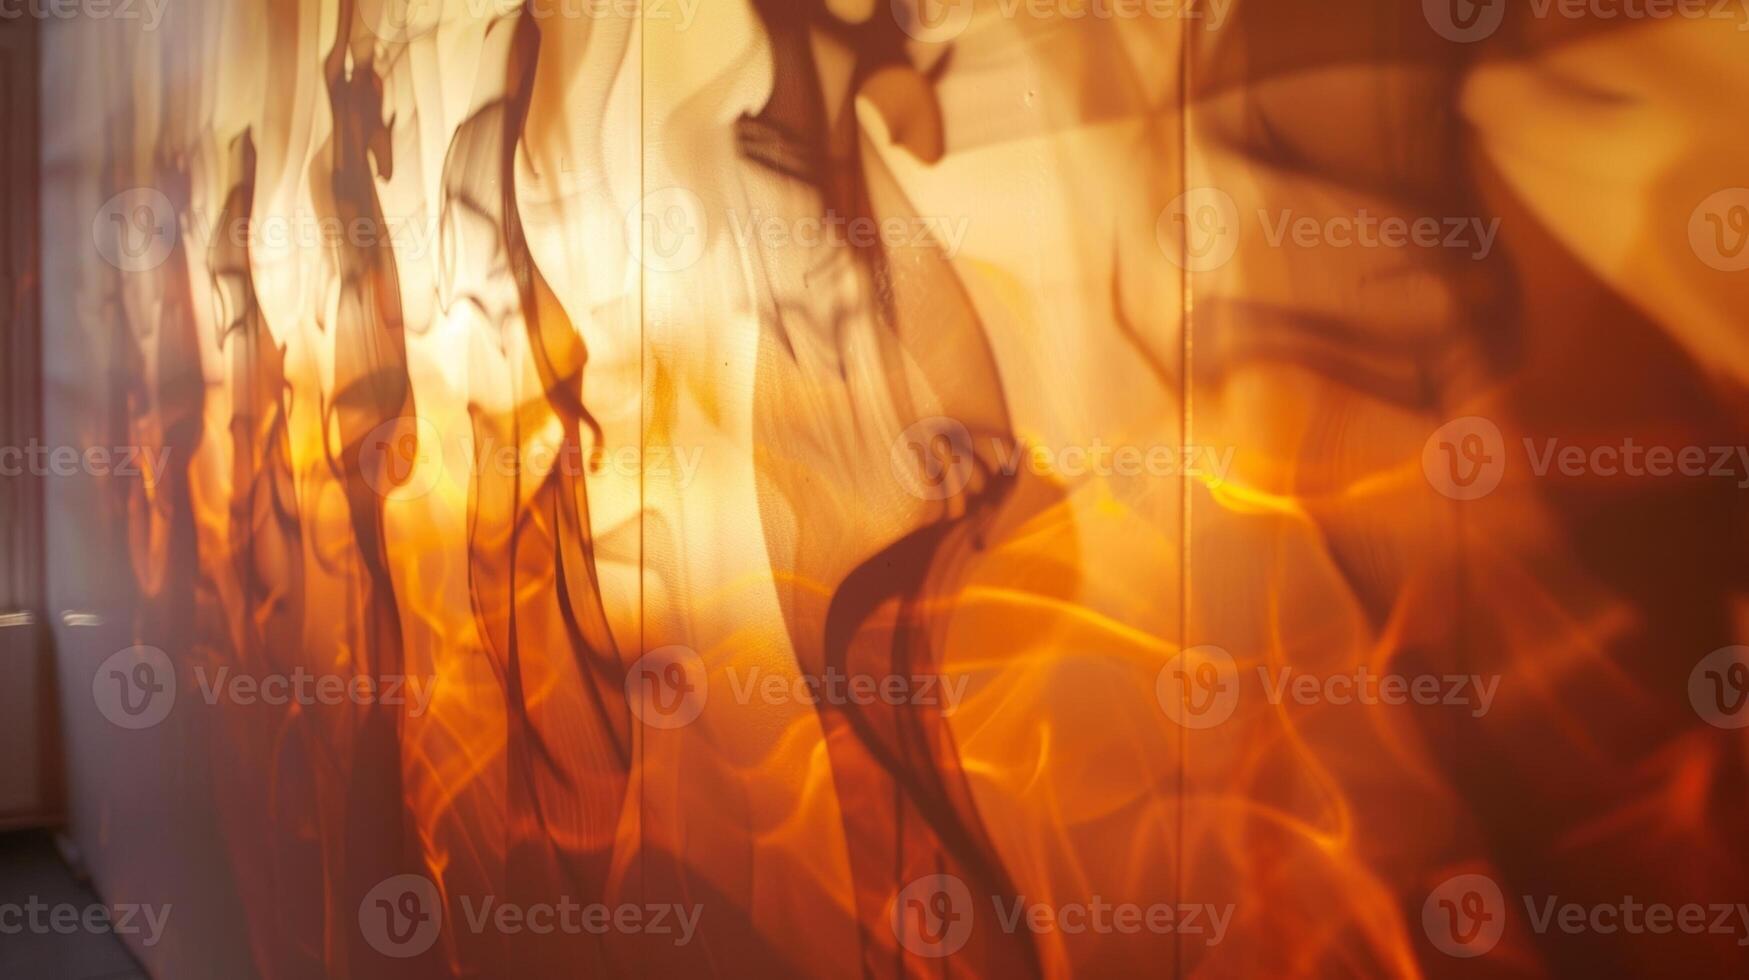 skuggor kasta förbi de brand dansa och flätas ihop skapande ett ständigt föränderlig och fascinerande visa på de verkstad väggar. 2d platt tecknad serie foto